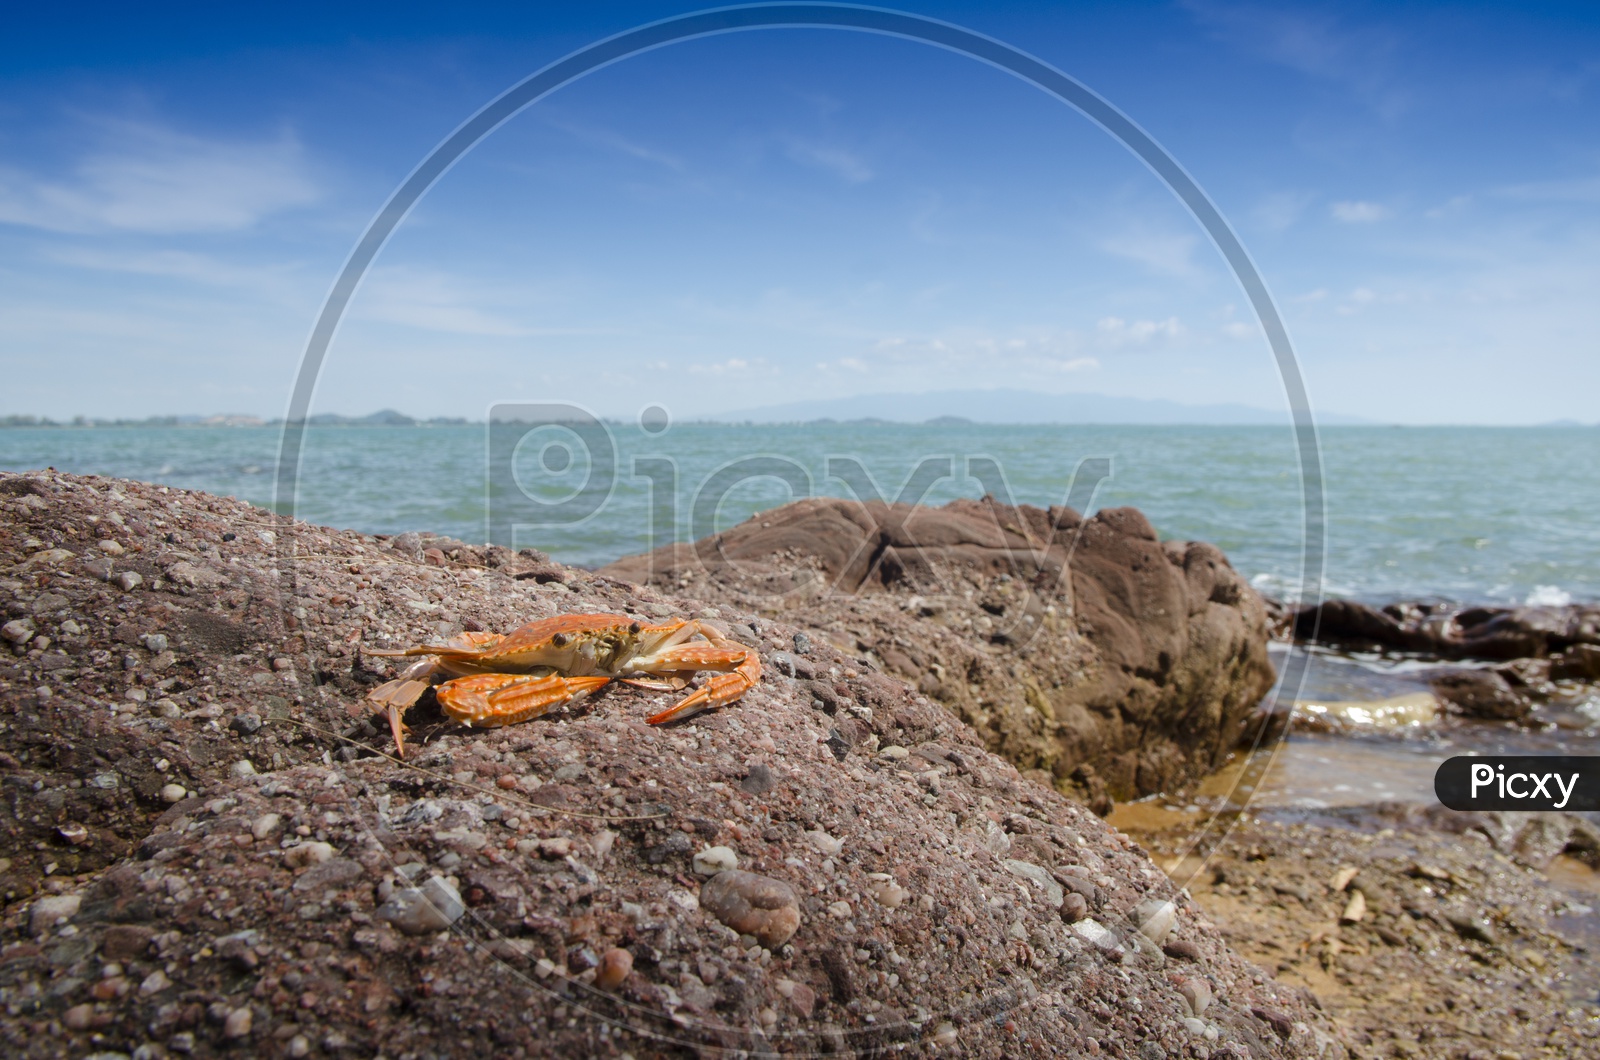 A Crab on beach, Thailand